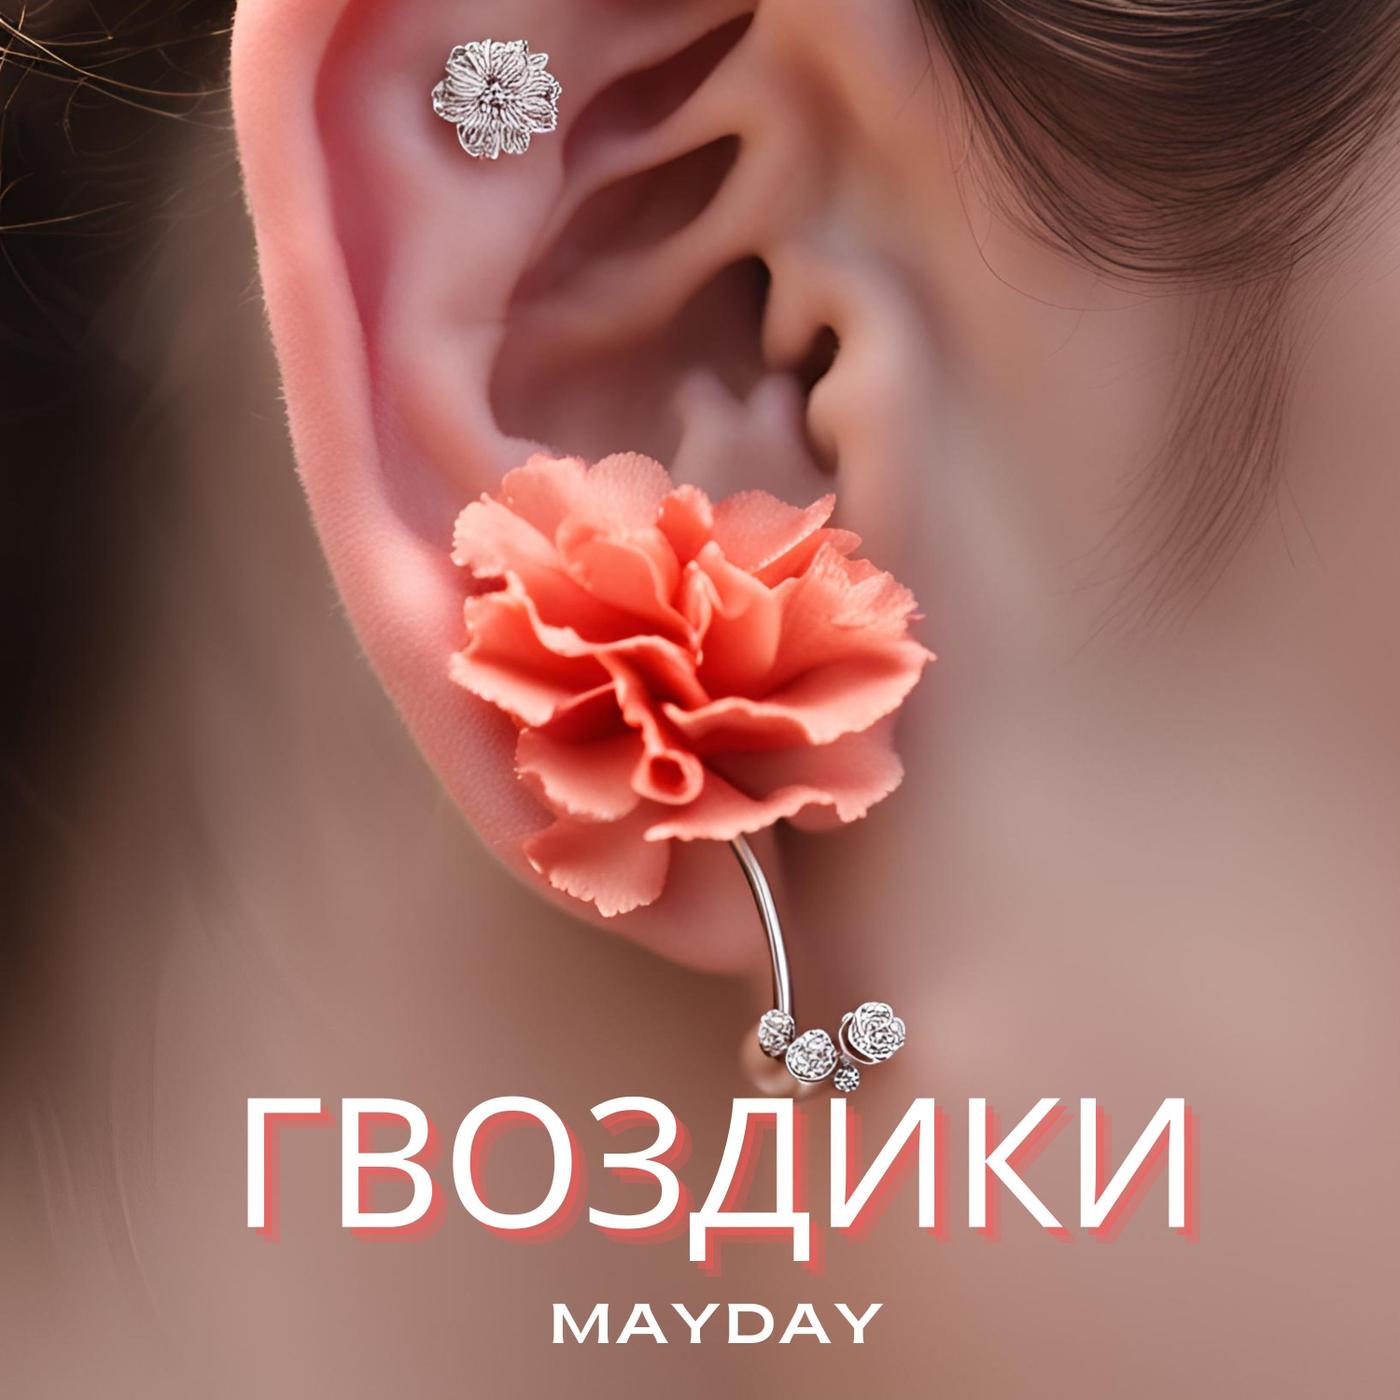 Mayday - Гвоздики